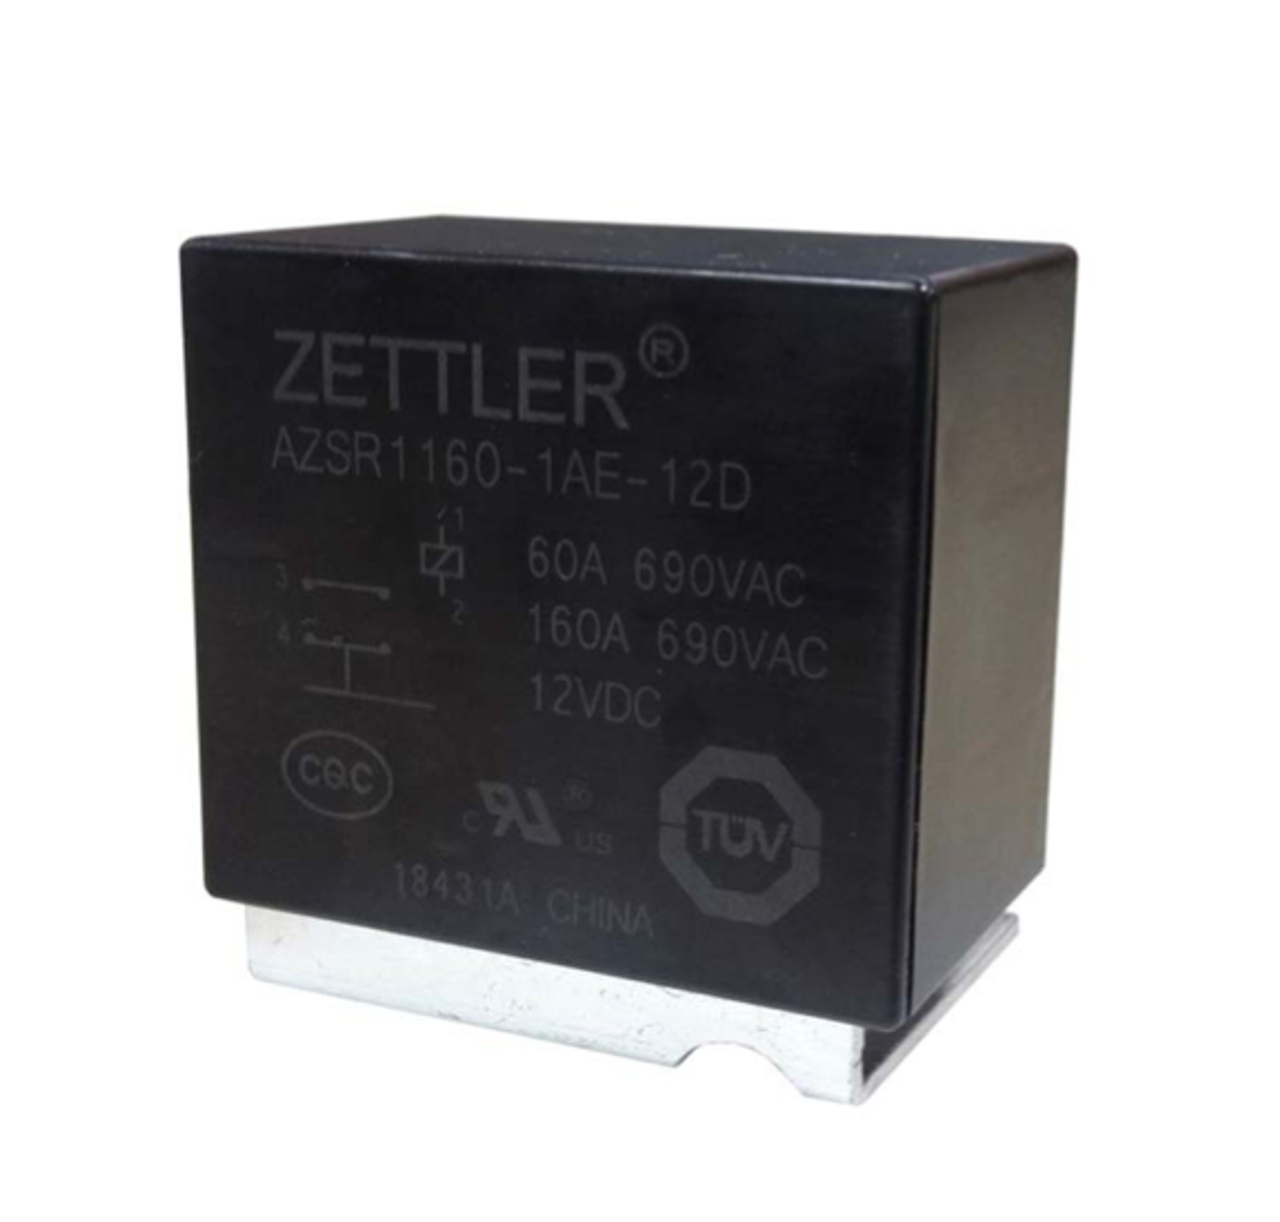 American Zettler AZSR1160-1AE-48D Power Relay